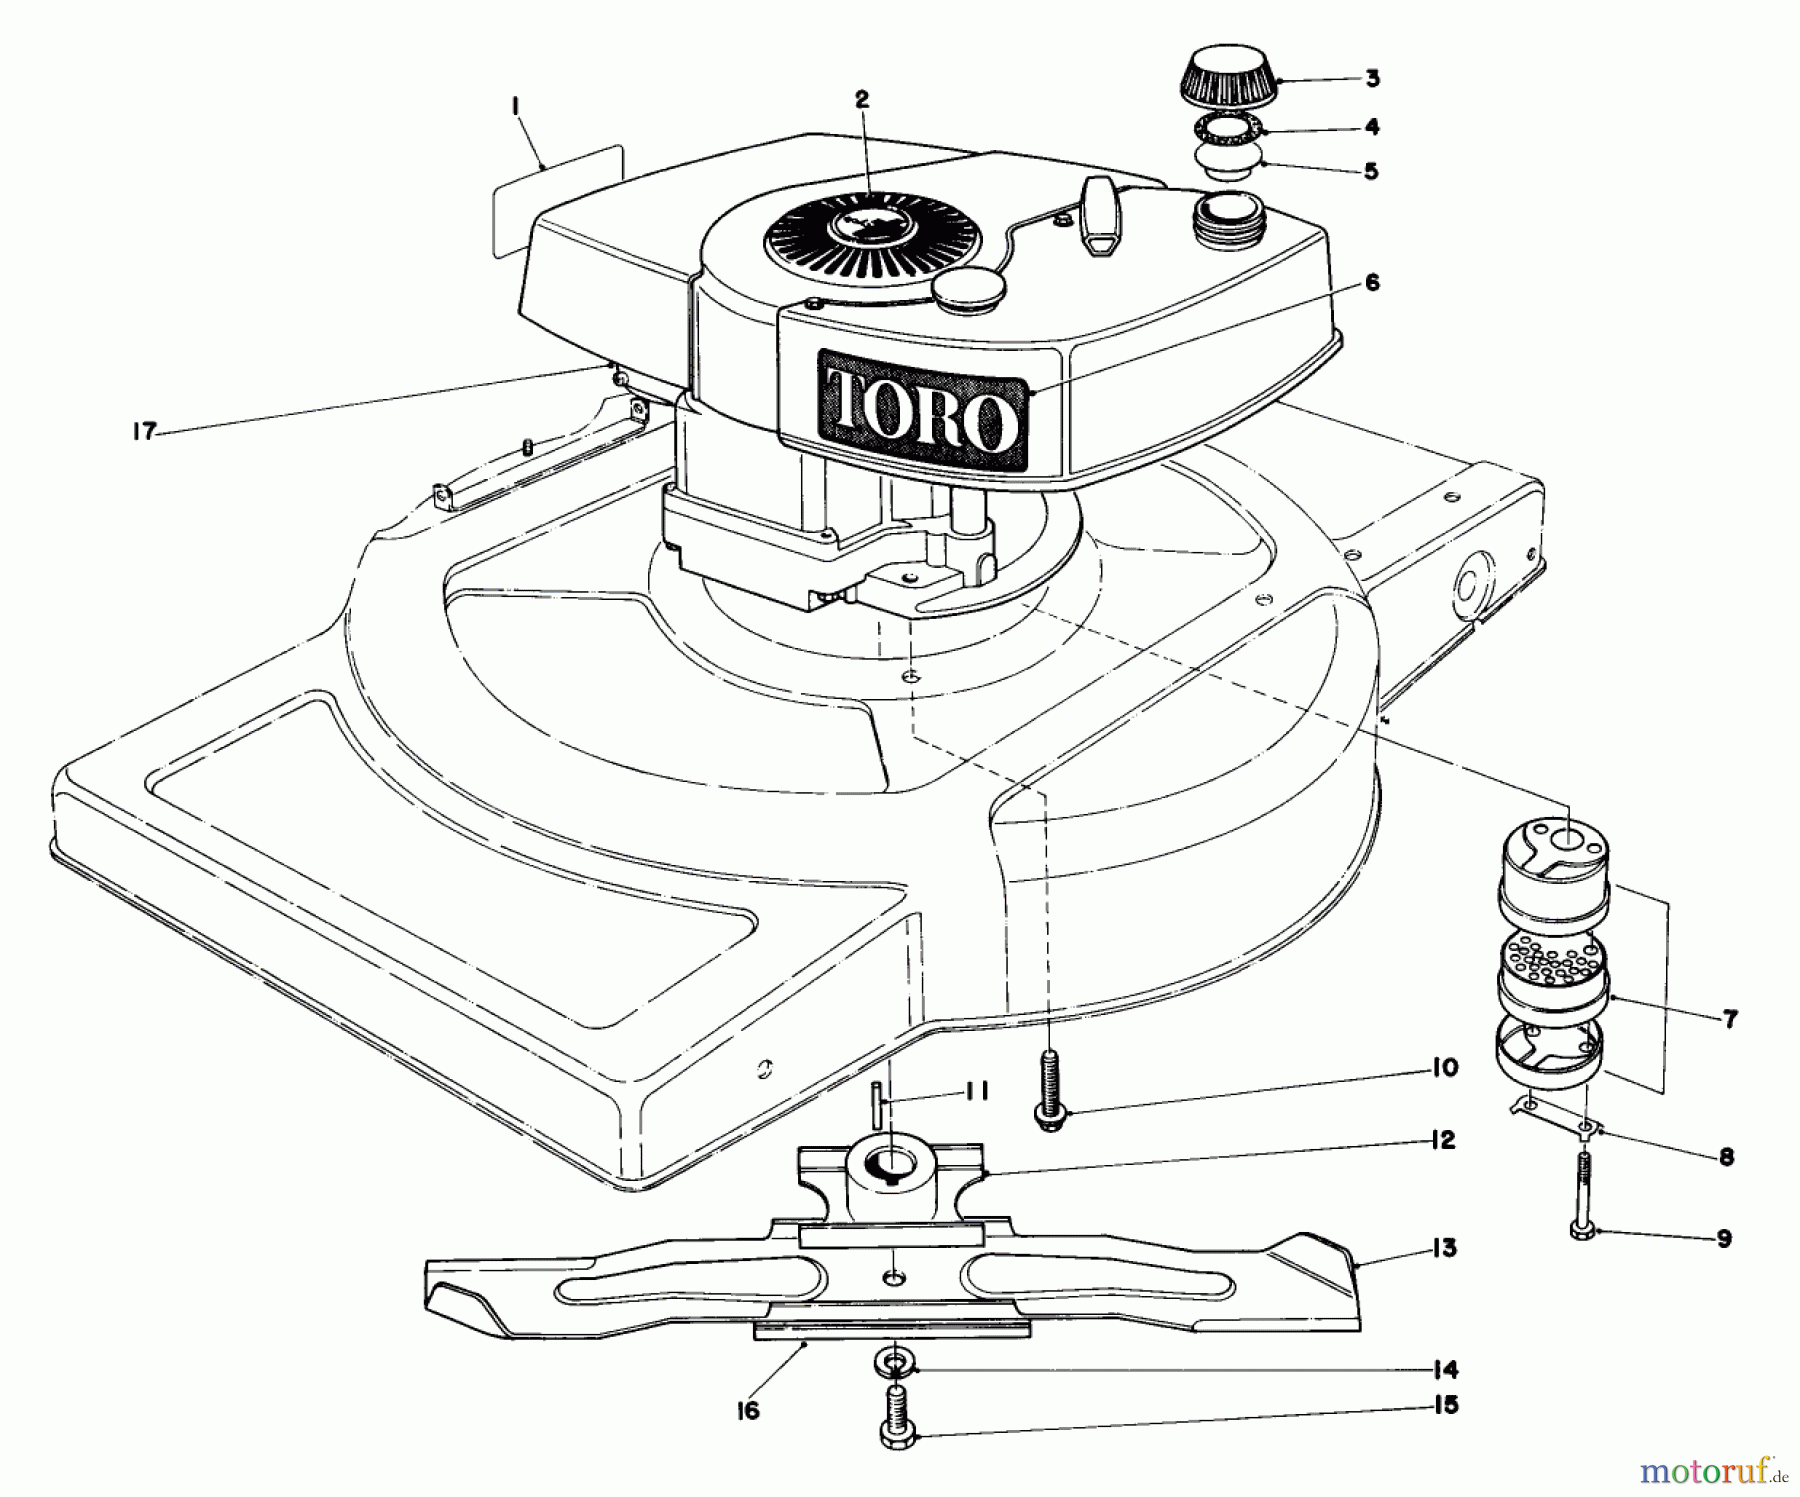  Toro Neu Mowers, Walk-Behind Seite 1 18010 - Toro Lawnmower, 1982 (2000001-2999999) ENGINE ASSEMBLY MODEL 18005